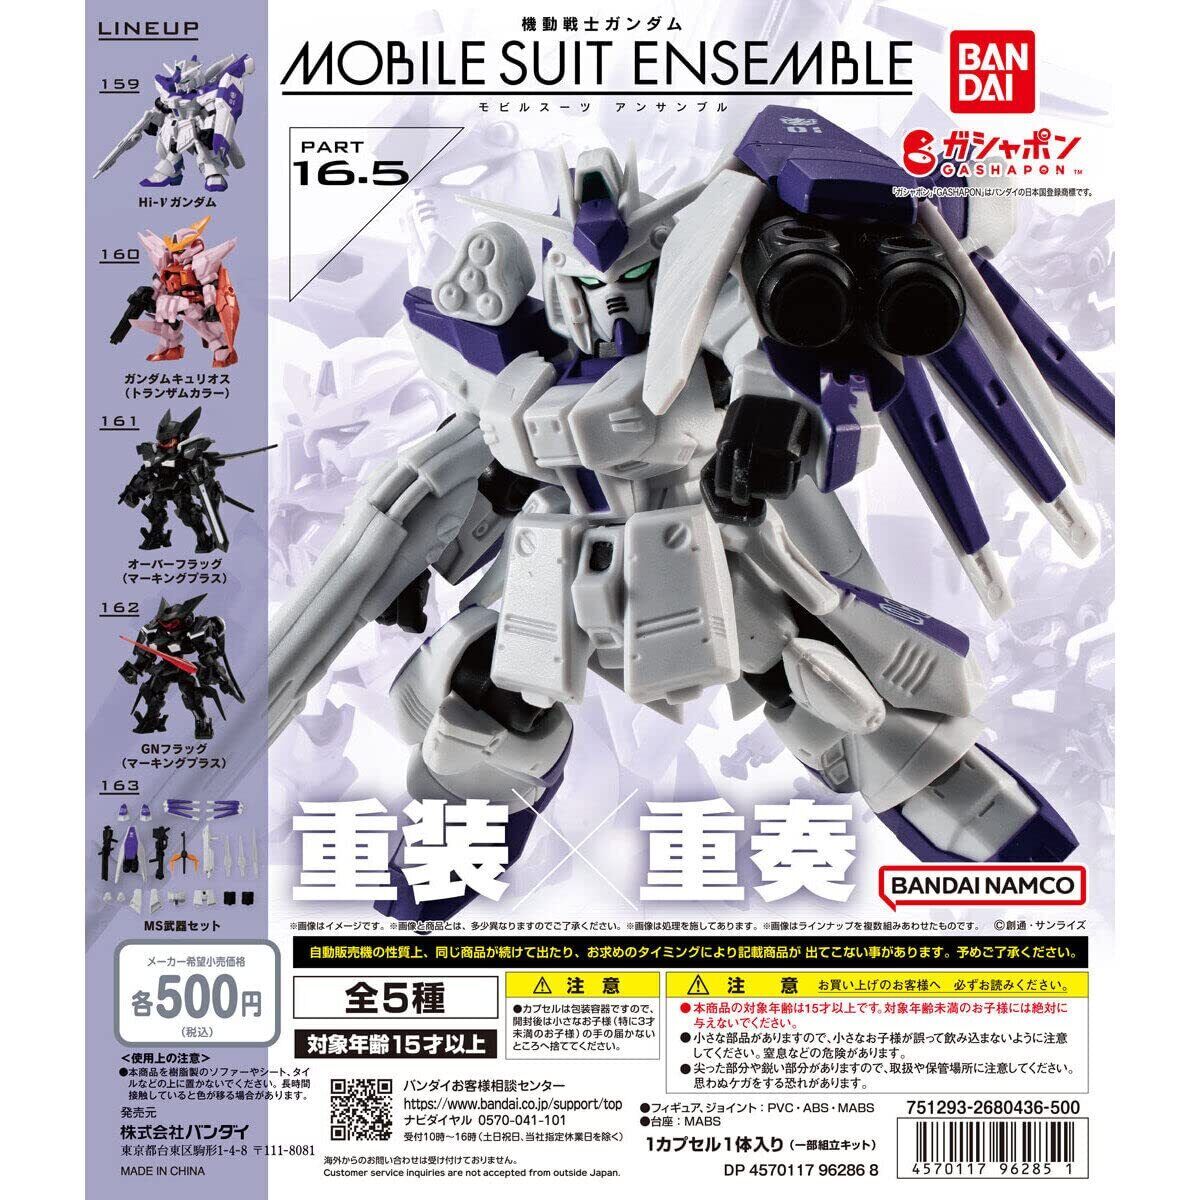 Mobile Suit Gundam mobile suit ensemble 16.5 All 5 types complete set